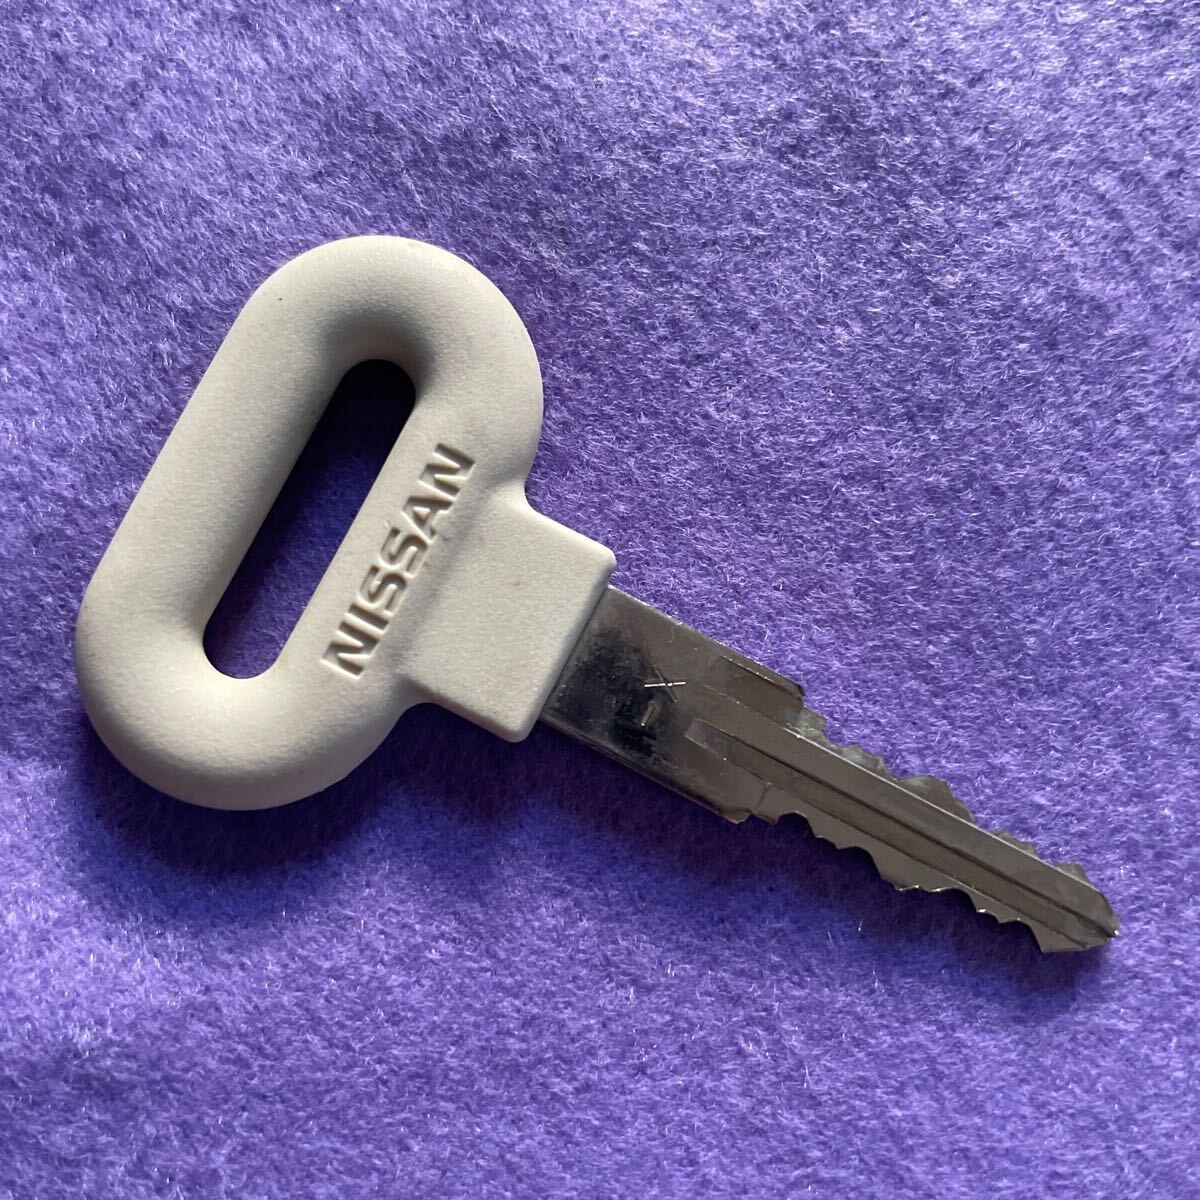  Nissan B1 original key unused 